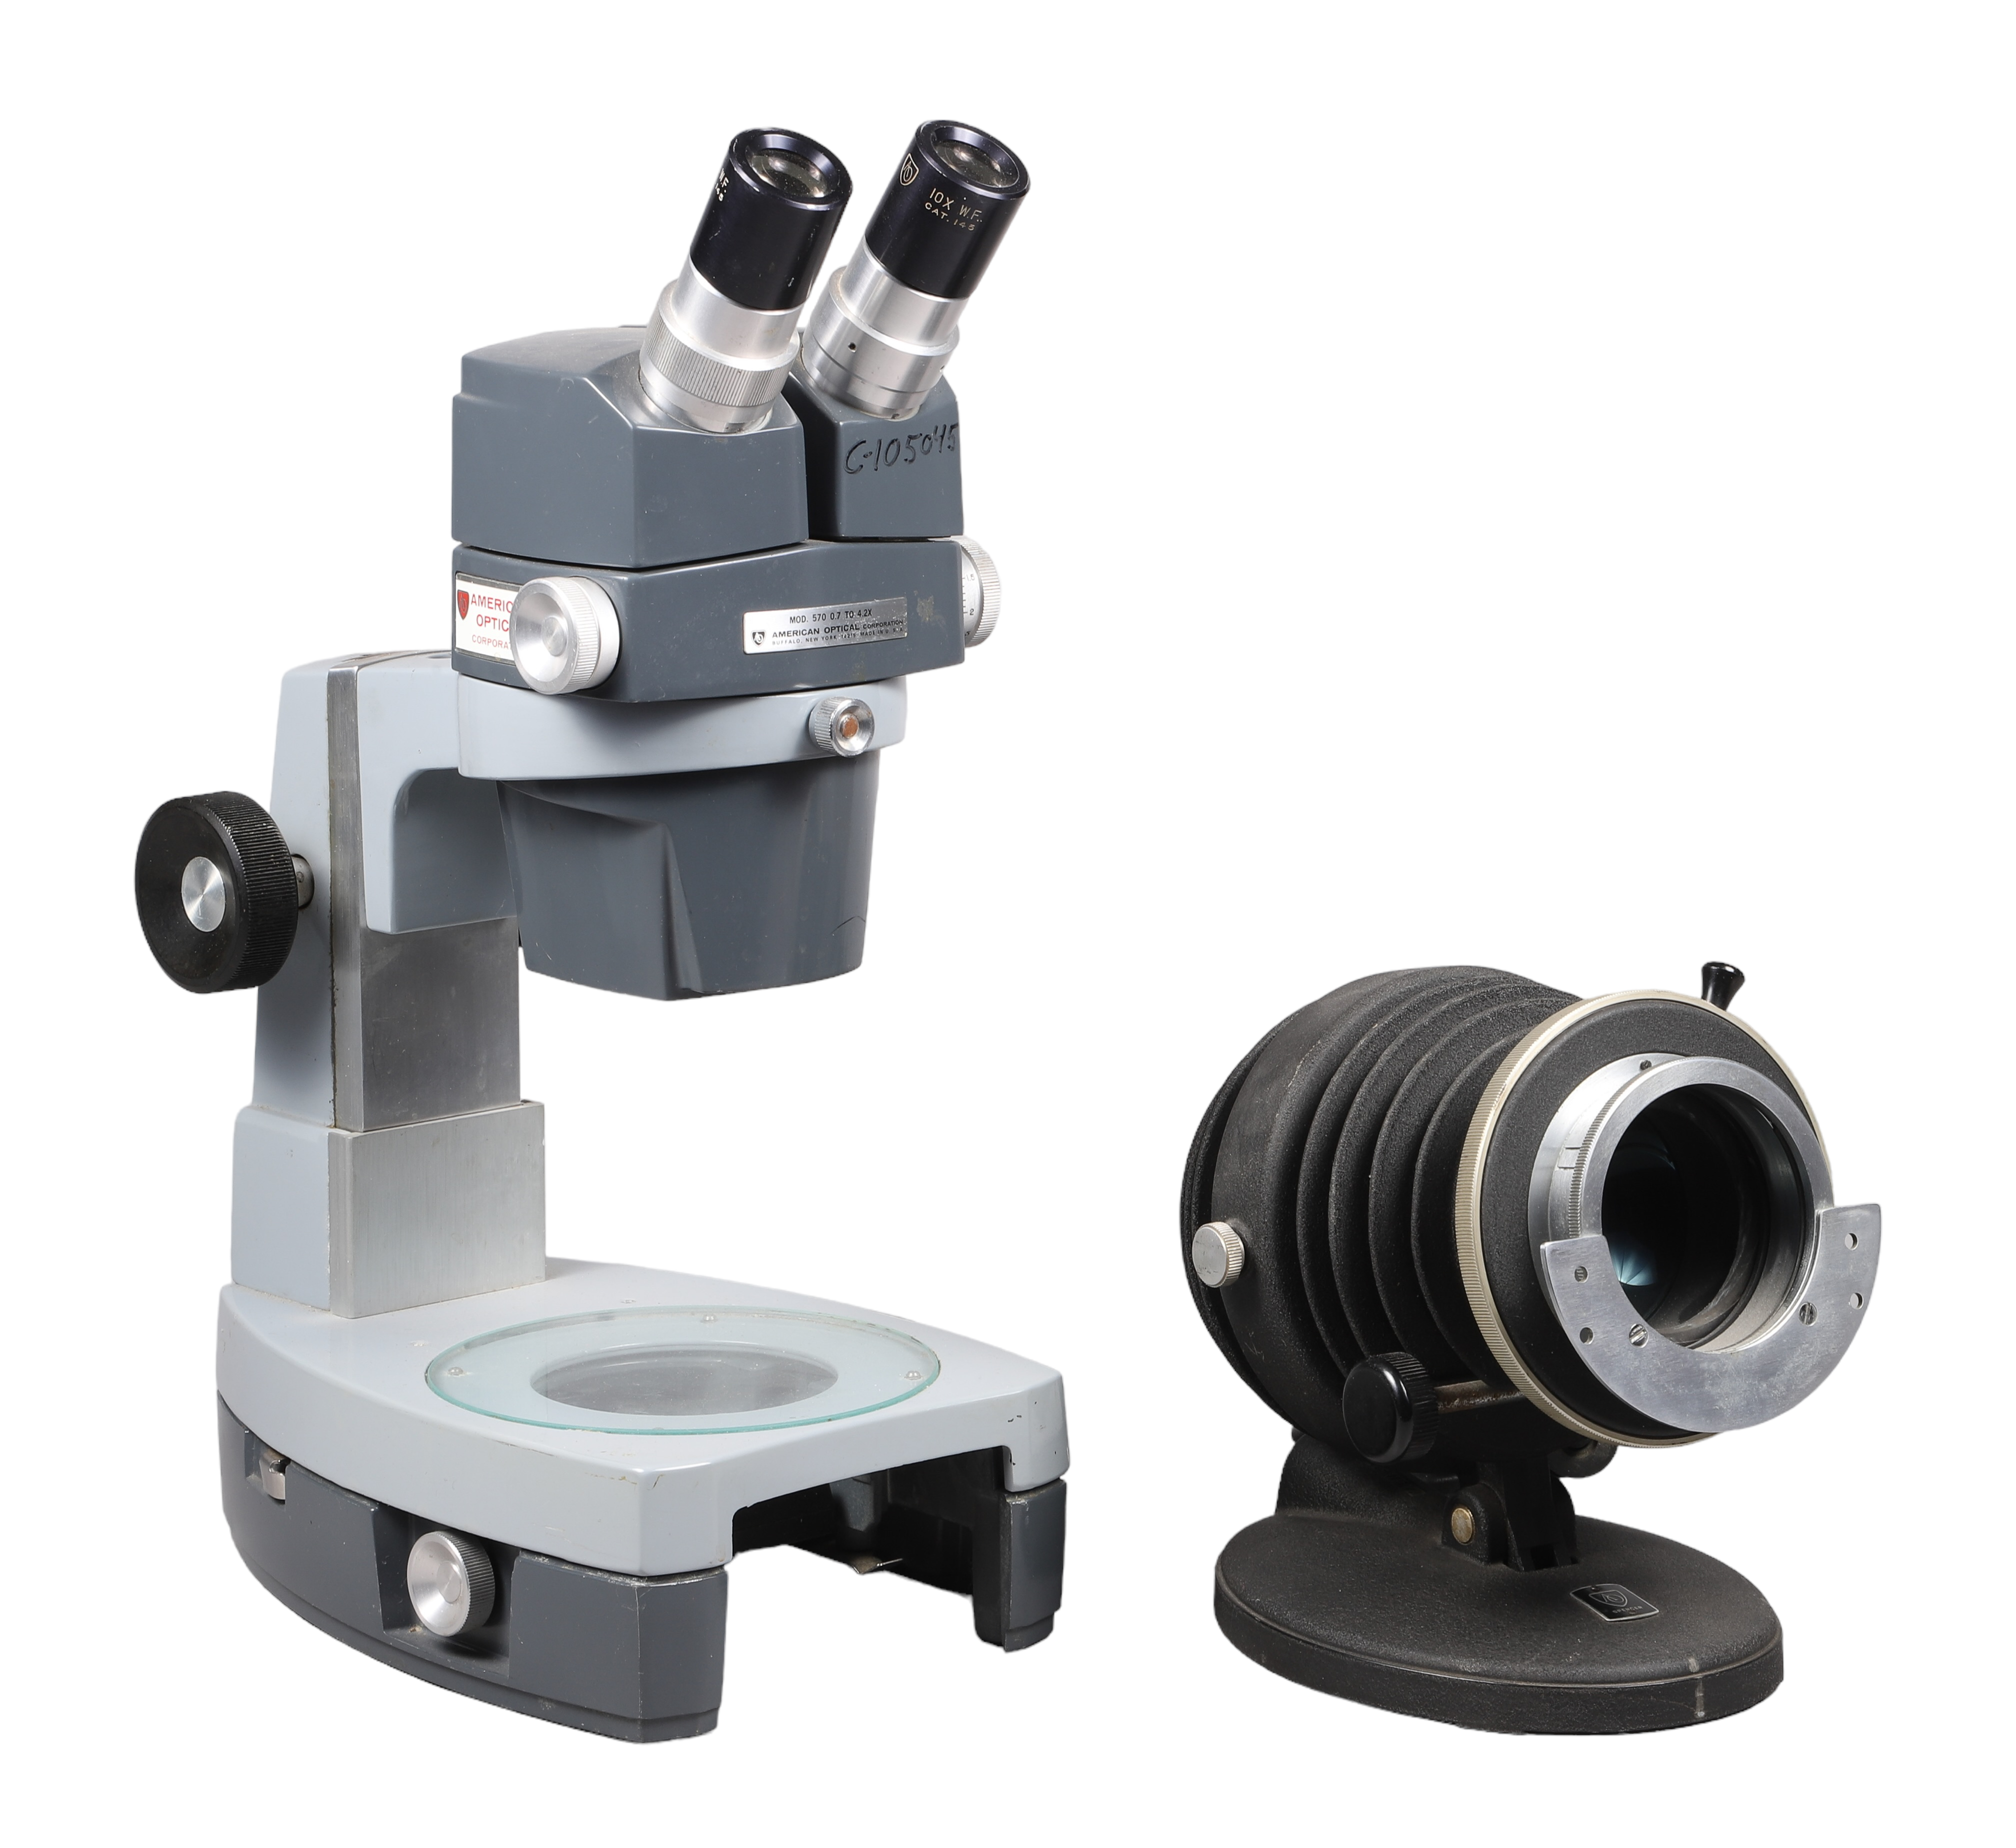 American Optical Stereo Microscope,